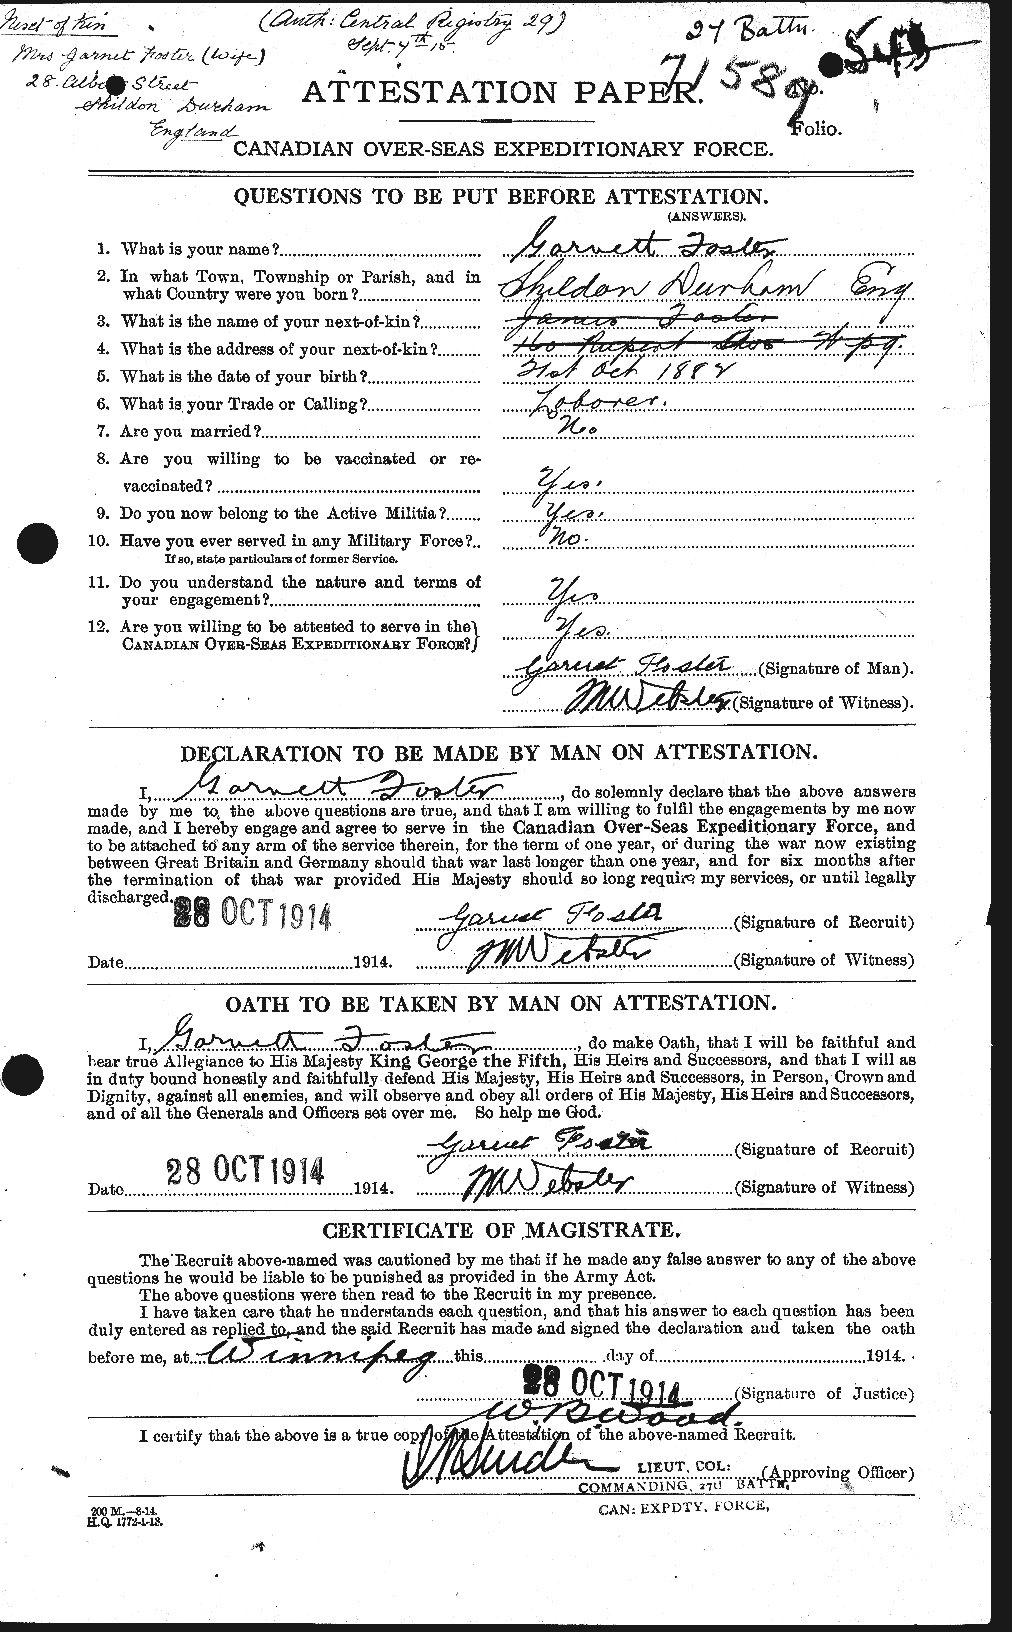 Dossiers du Personnel de la Première Guerre mondiale - CEC 330658a